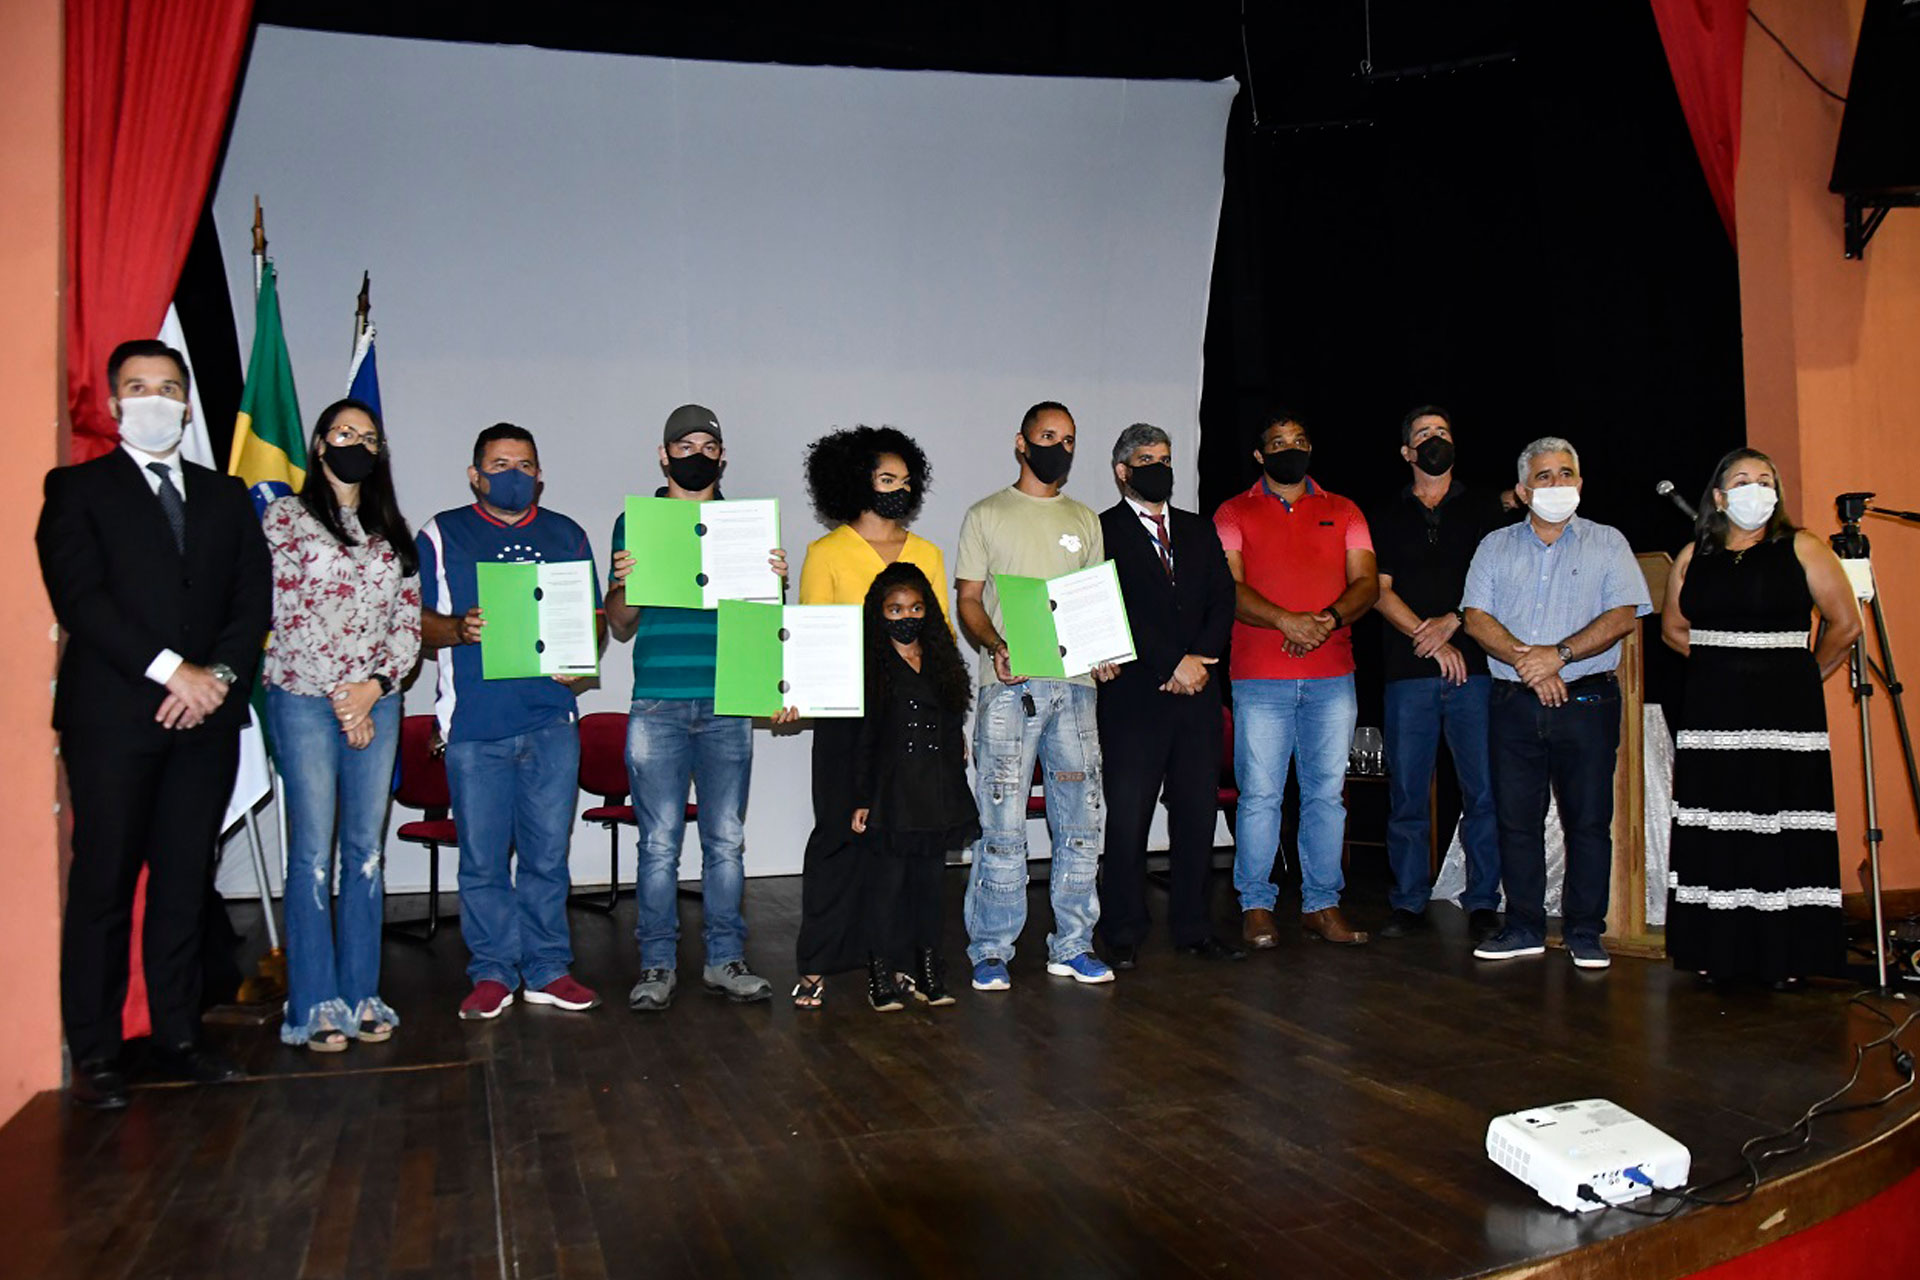 Cinco representantes do bairro receberam os certificados das maos das autoridades do municipio PMI